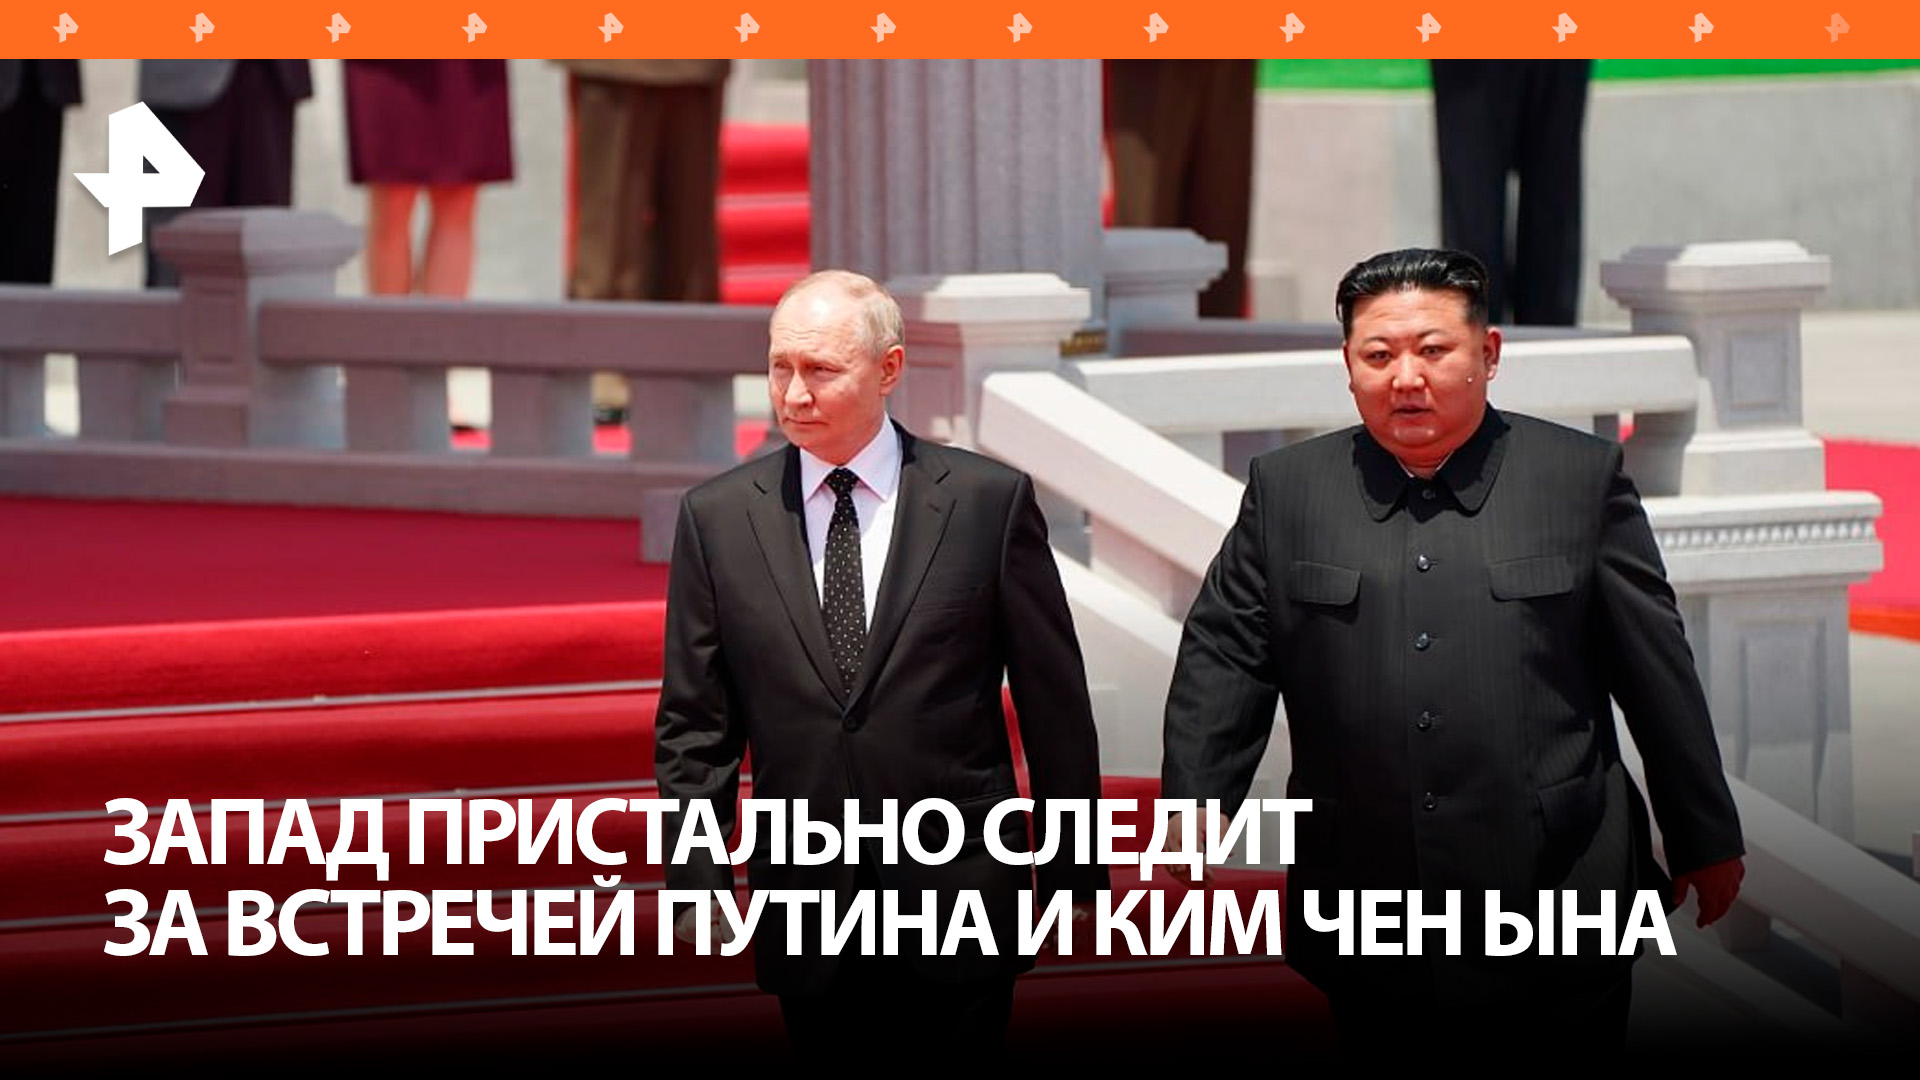 Мировая пресса внимательно следит за визитом Путина в Пхеньян / РЕН Новости